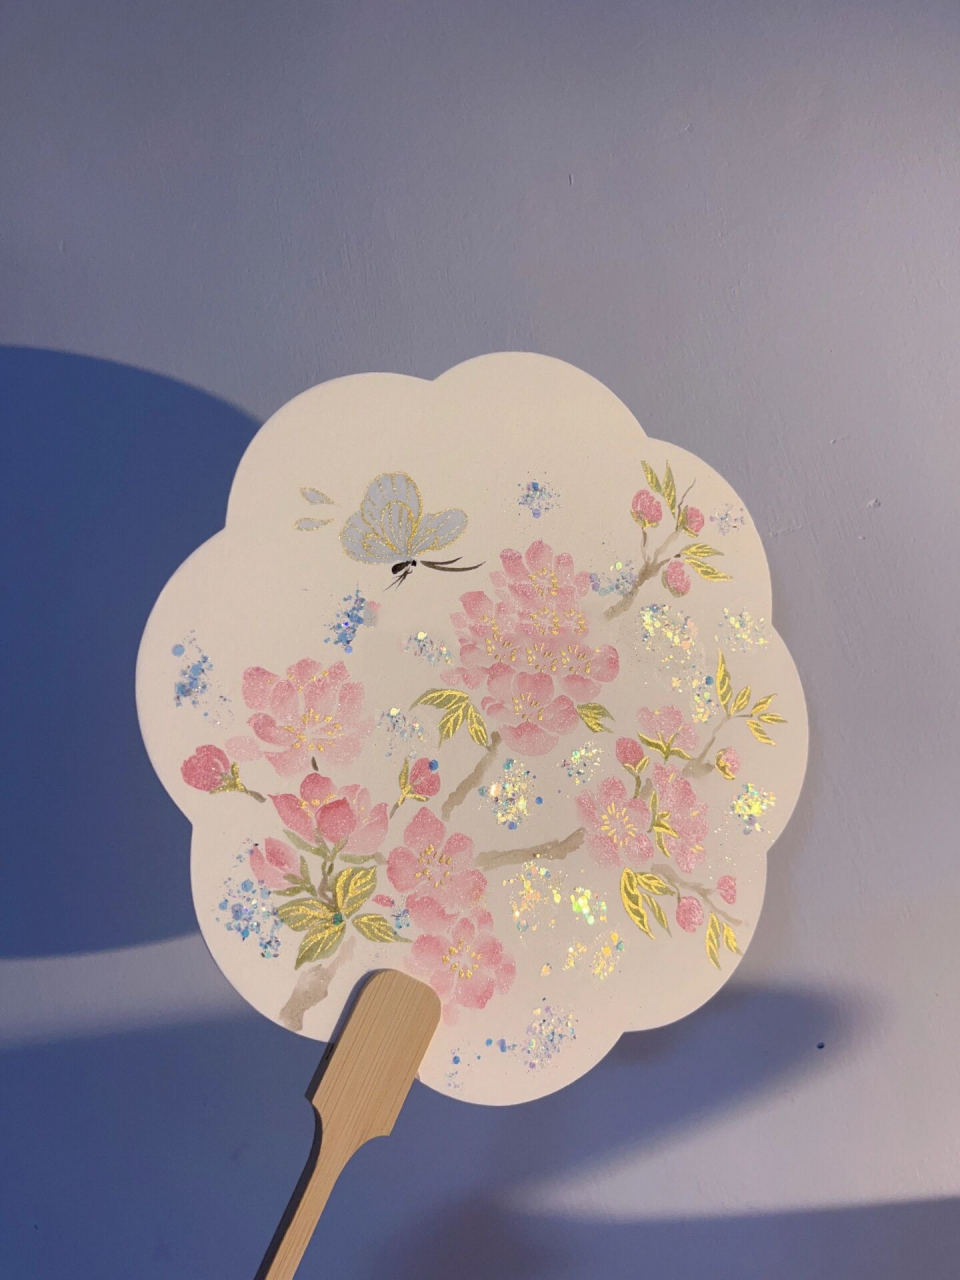 近期画得最粉嫩的一把桃花团扇了 桃花手绘团扇,图二有细节图,真的是